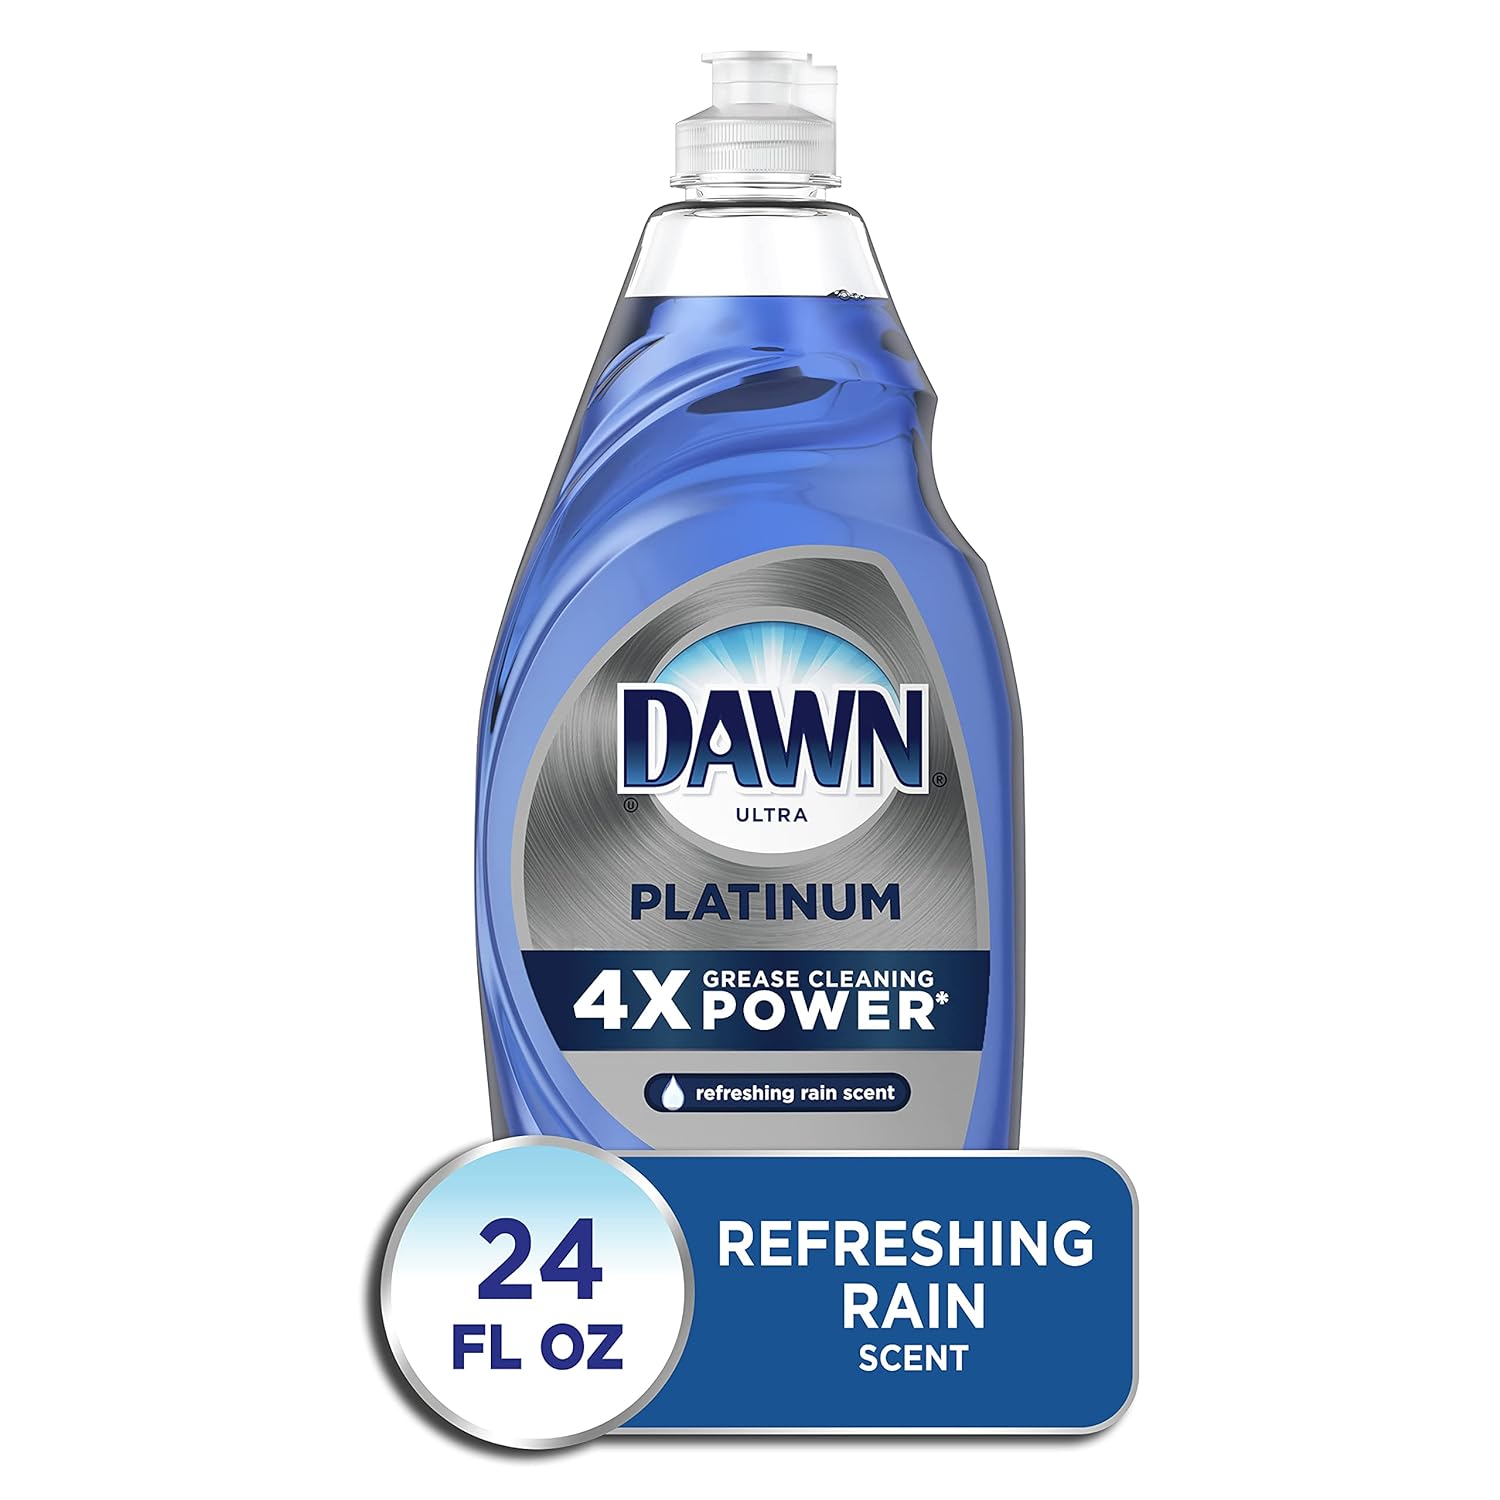 Dawn Platinum Dishwashing Liquid Dish Soap, Refreshing Rain Scent, 24 Fl Oz